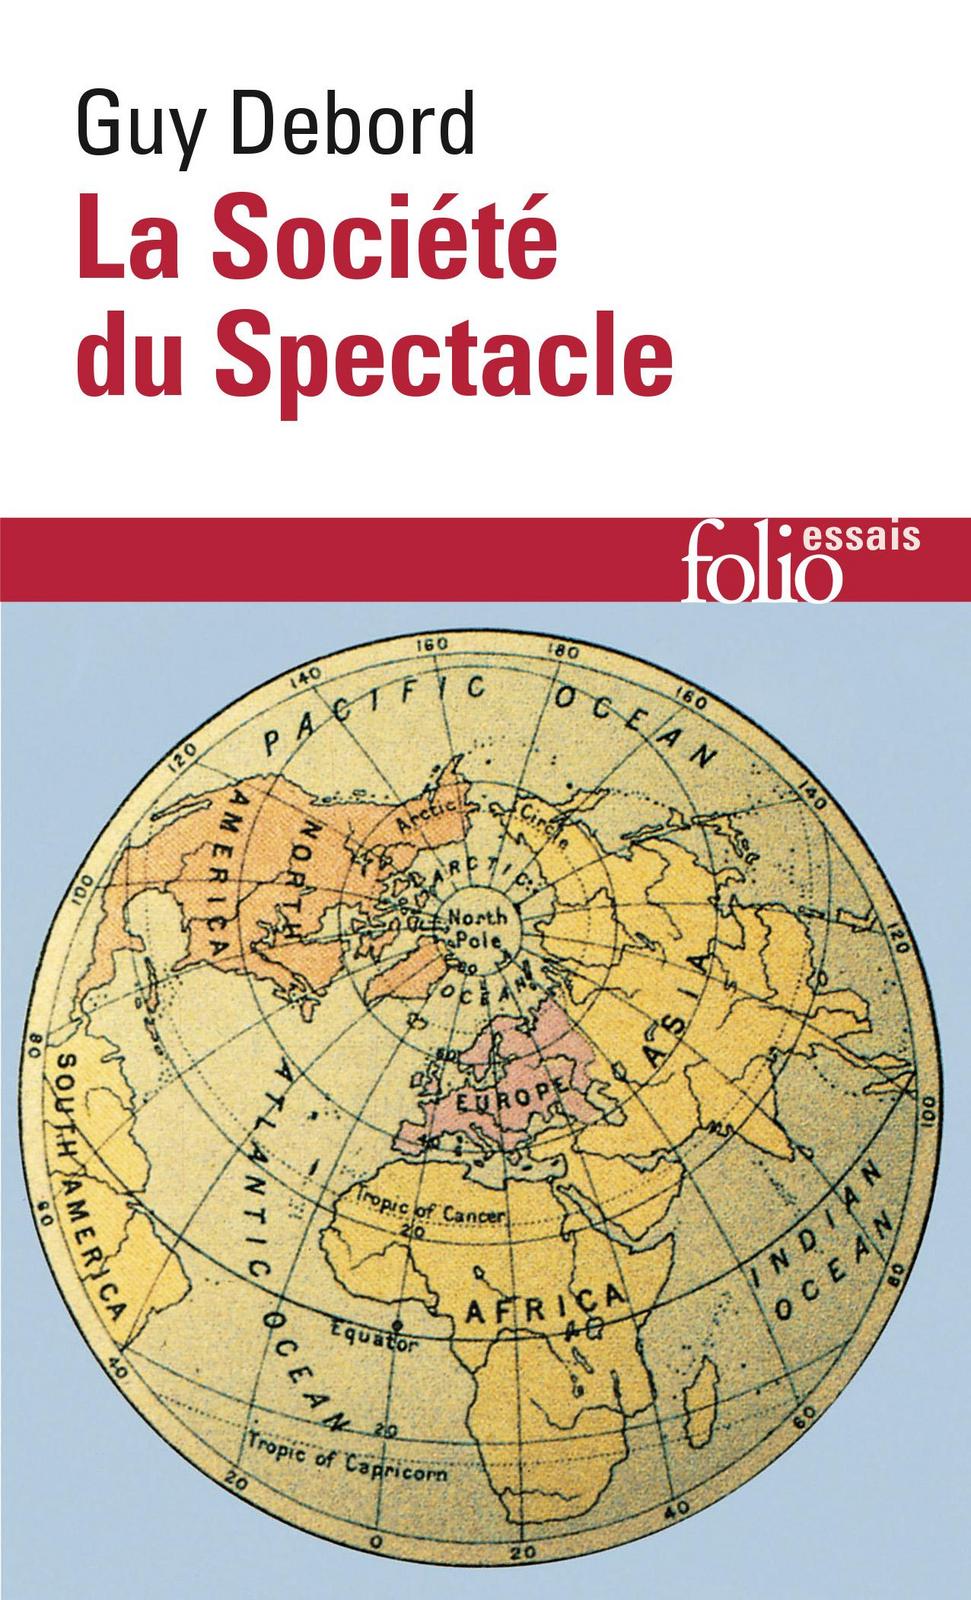 Guy Debord: La société du spectacle (French language, 2018, Éditions Gallimard)